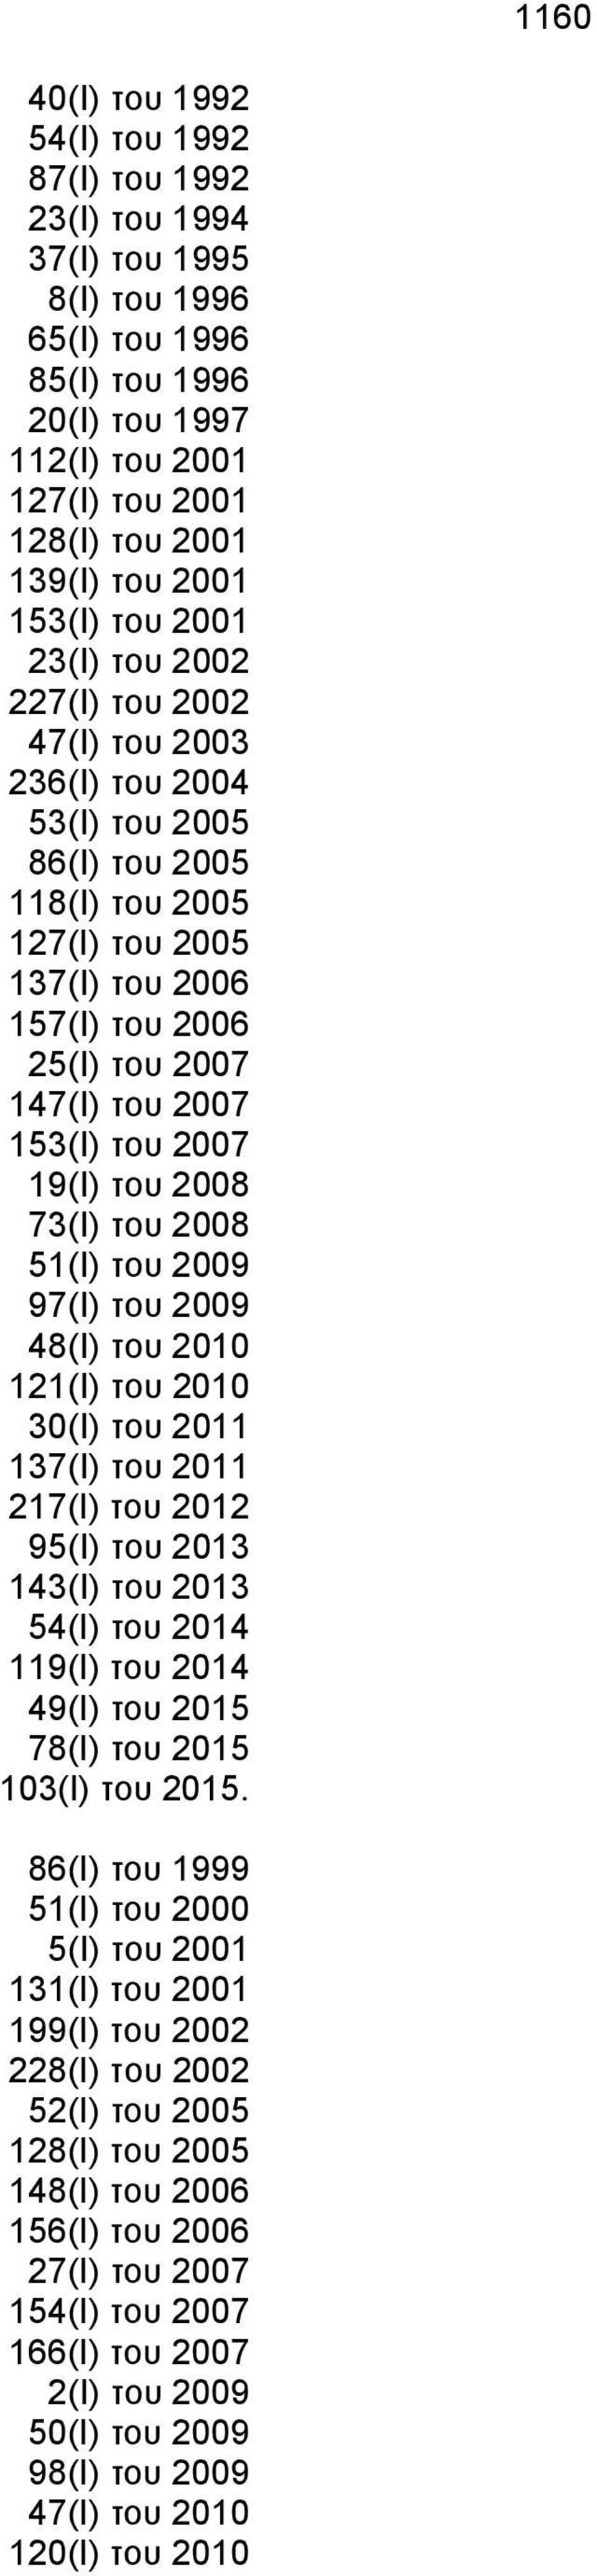 του 2007 153(I) του 2007 19(I) του 2008 73(I) του 2008 51(I) του 2009 97(I) του 2009 48(I) του 2010 121(I) του 2010 30(I) του 2011 137(I) του 2011 217(Ι) του 2012 95(I) του 2013 143(I) του 2013 54(Ι)